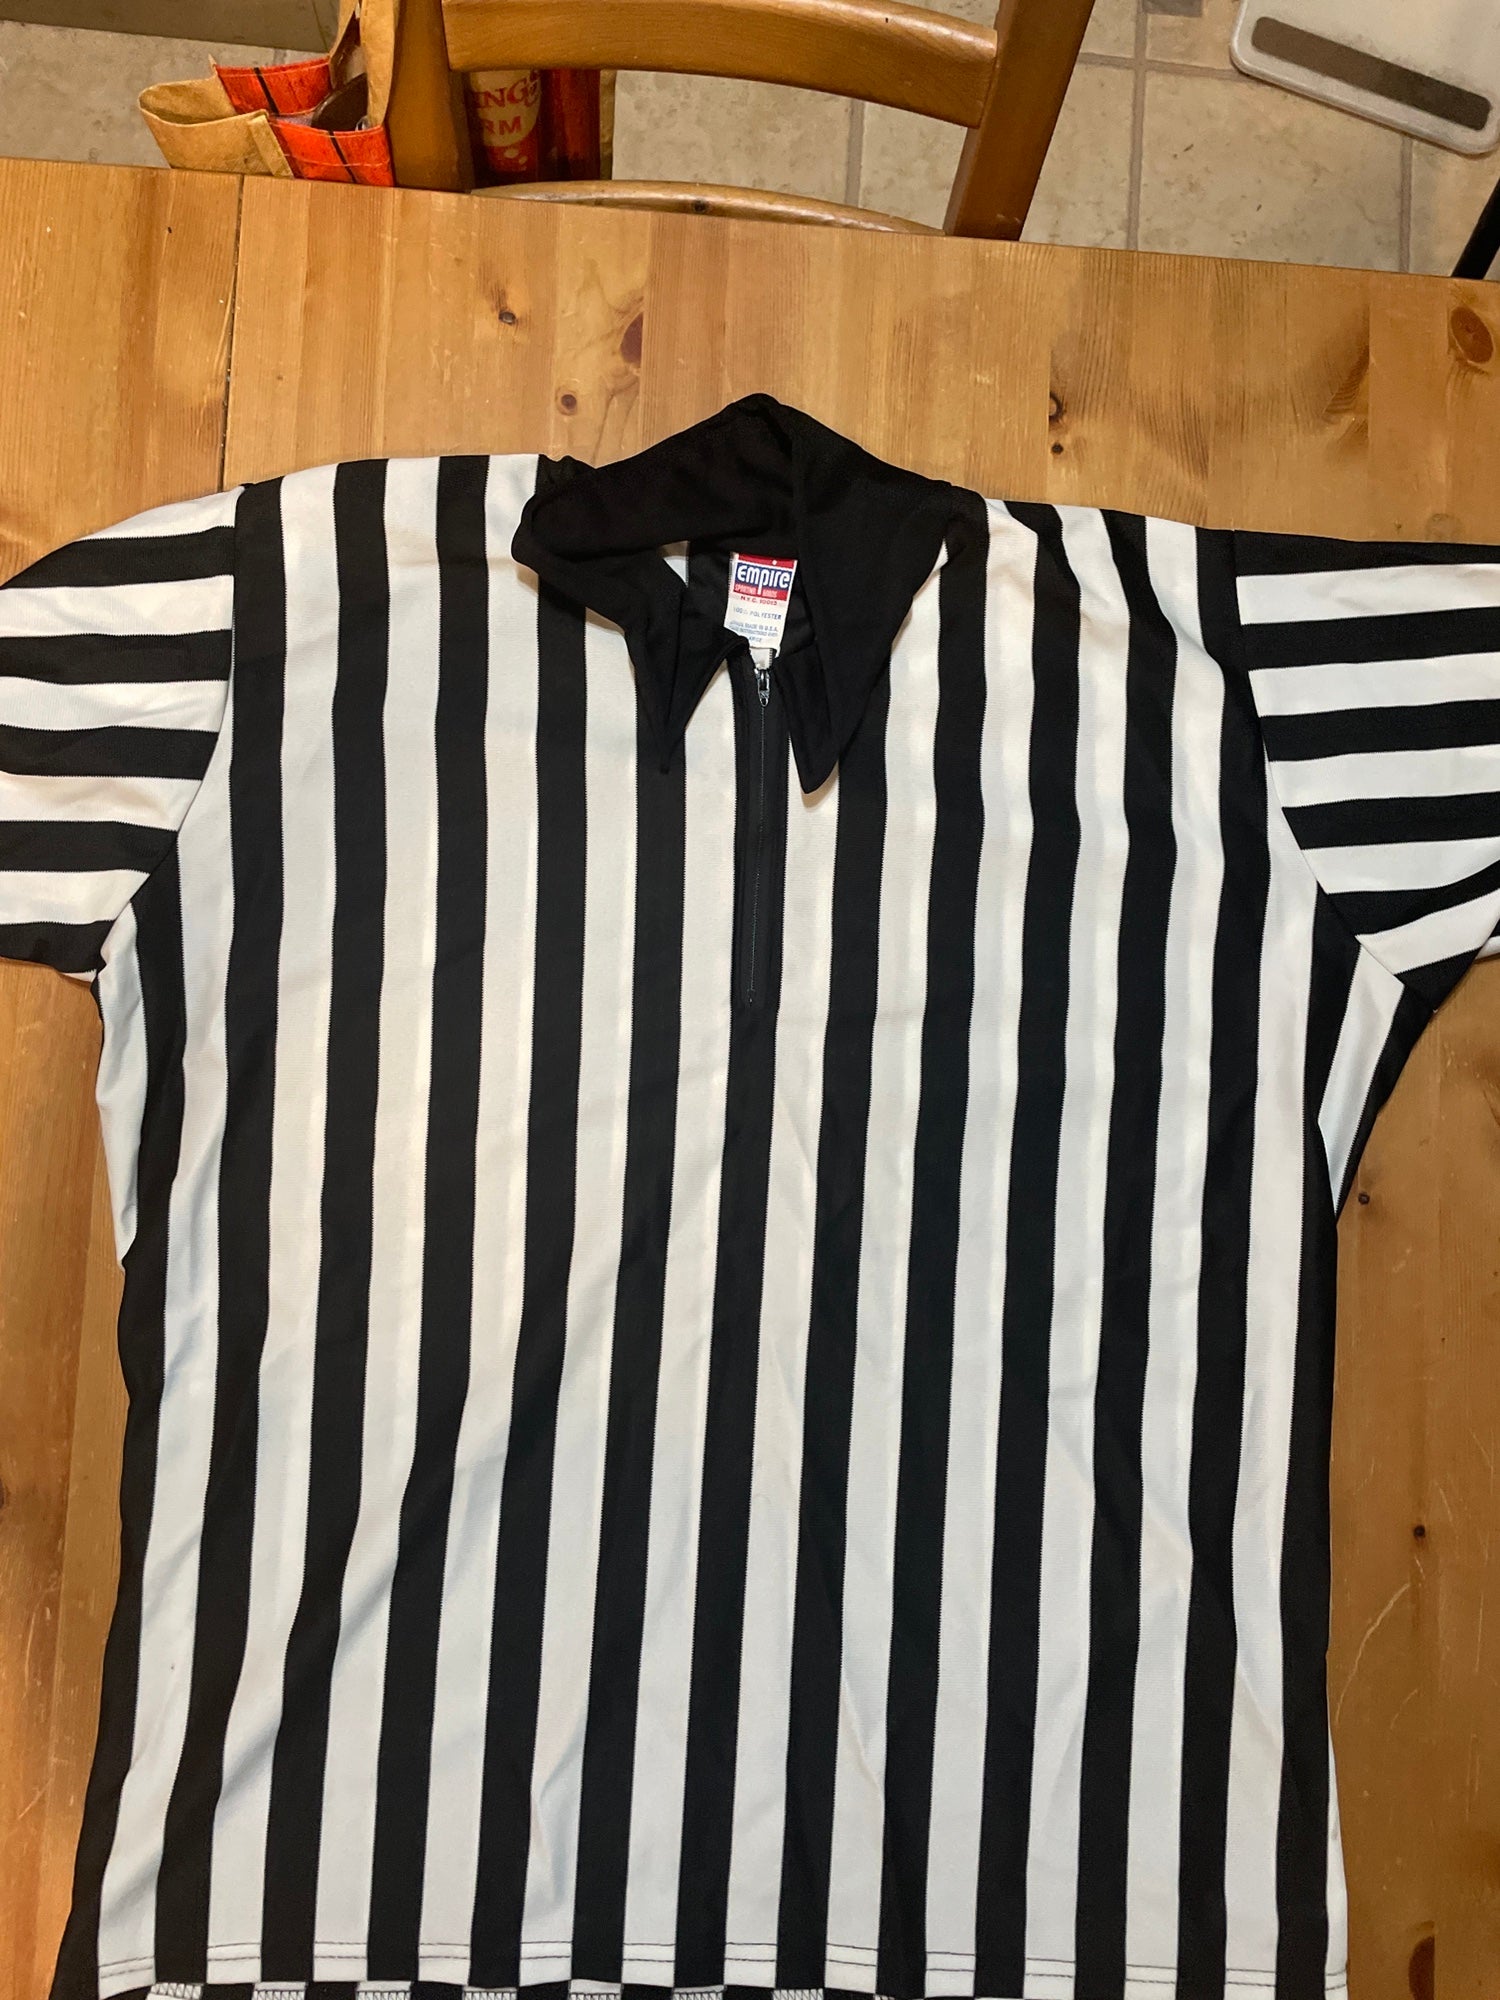 Dallas Mavericks NBA Short Sleeve Shirt, Size Adult XL